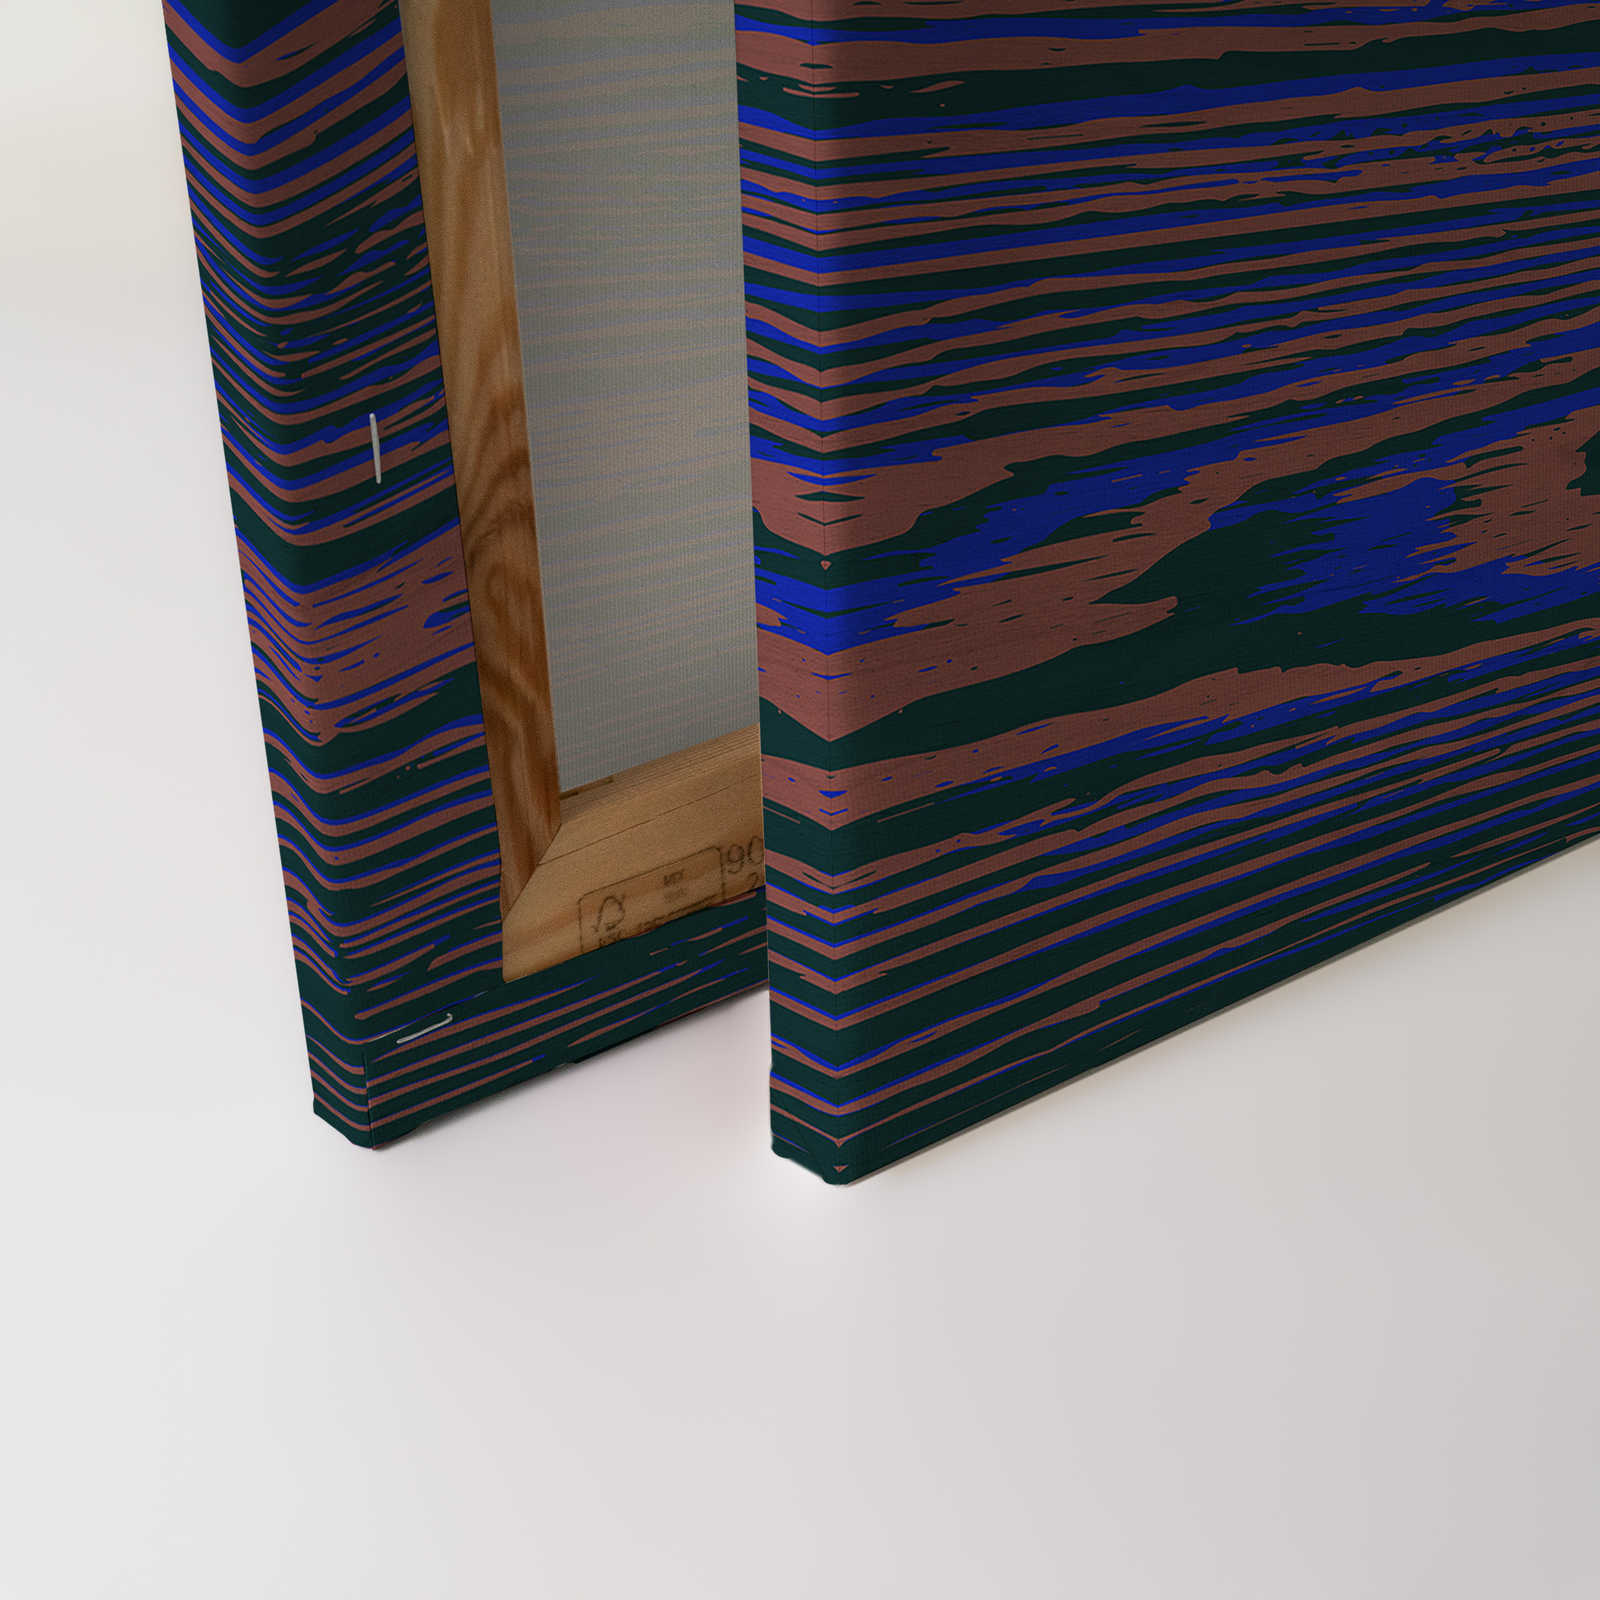             Kontiki 3 - Toile Veines de bois néon, violet & noir - 1,20 m x 0,80 m
        